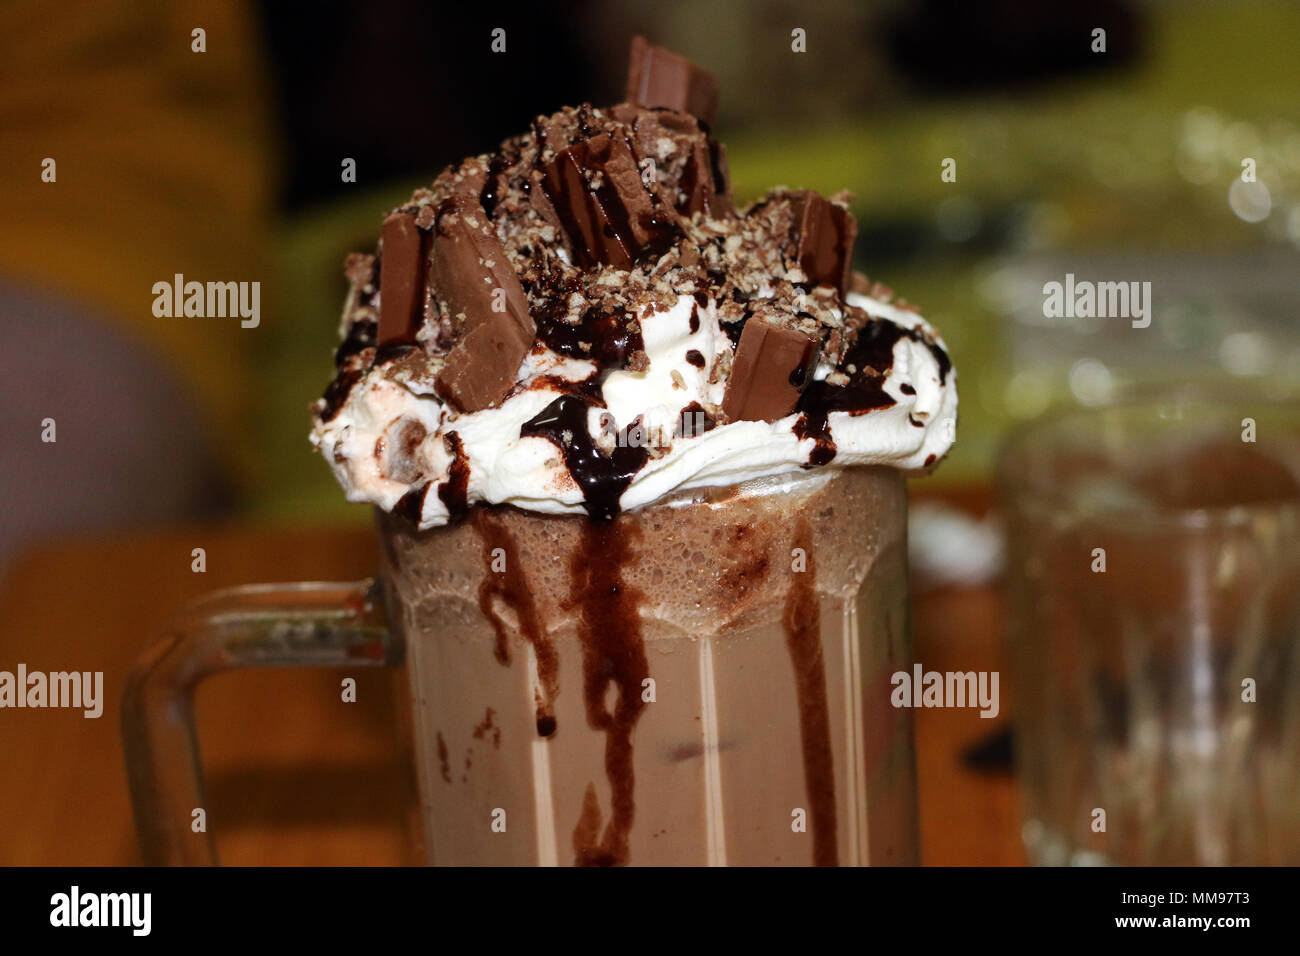 choclate milkshake Stock Photo